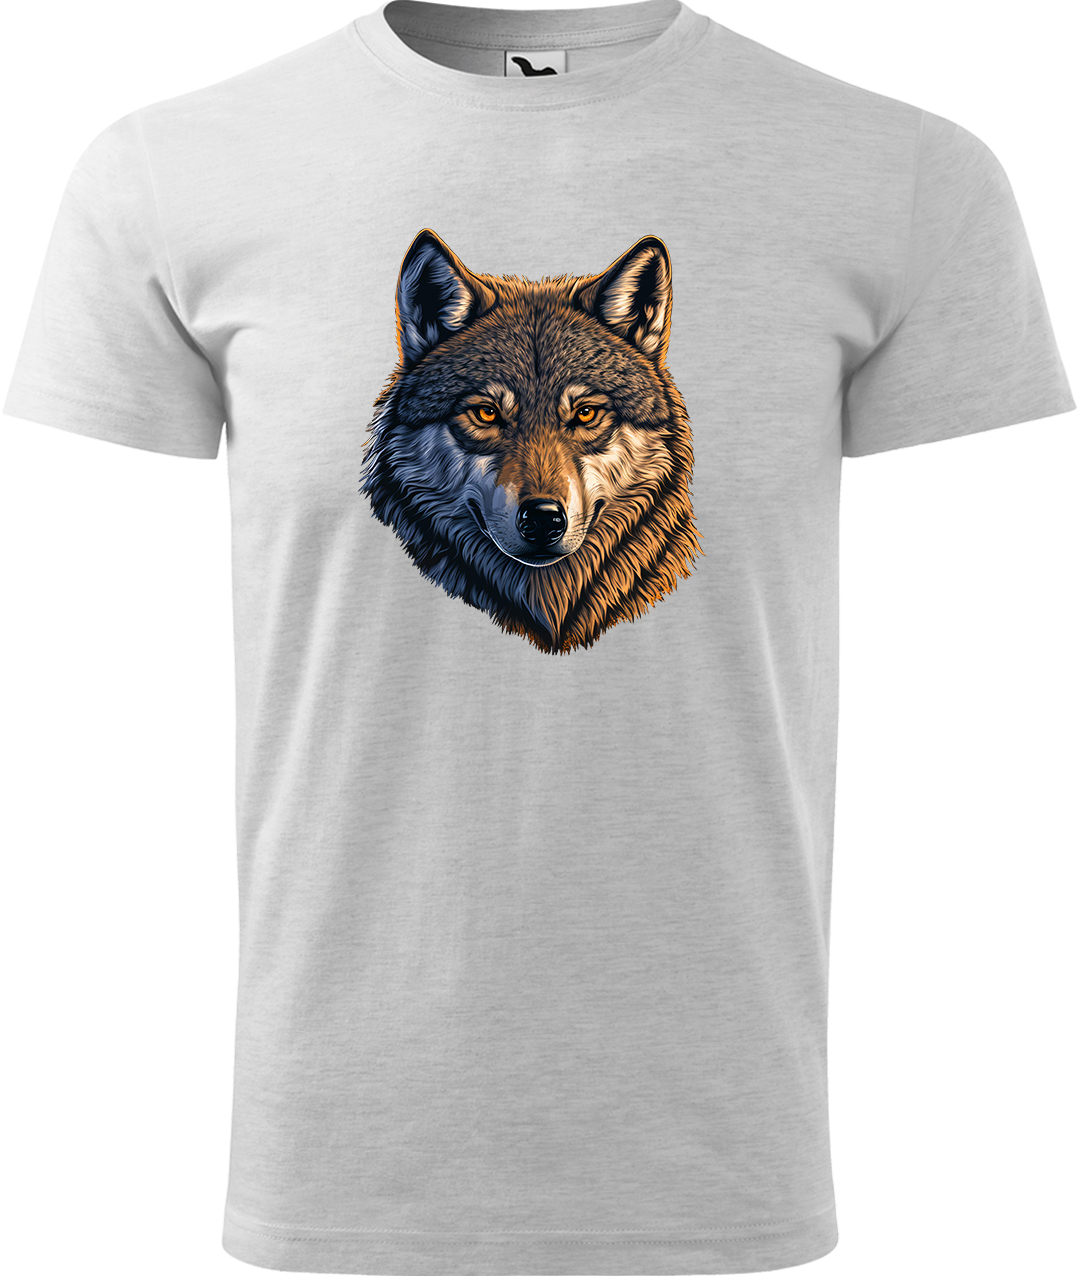 Pánské tričko s vlkem - Hlava vlka Velikost: L, Barva: Světle šedý melír (03), Střih: pánský